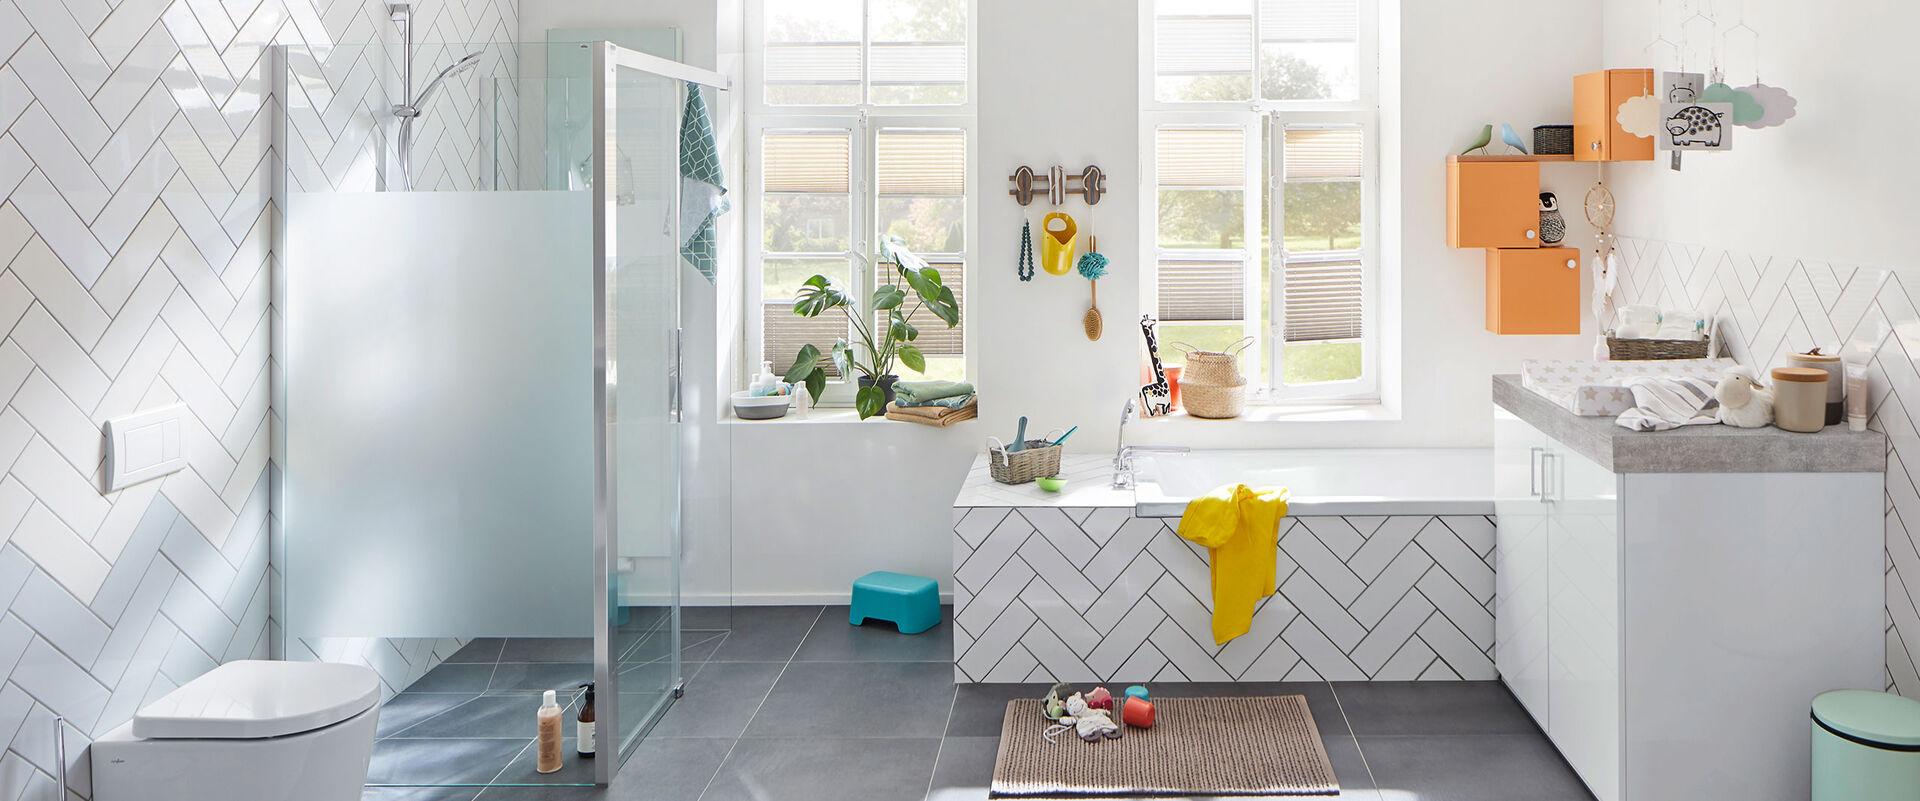 Freundliches Familienbadezimmer-Konzept von Kermi mit großzügigem Duschbereich bodeneben und Sichtschutz zum WC. 